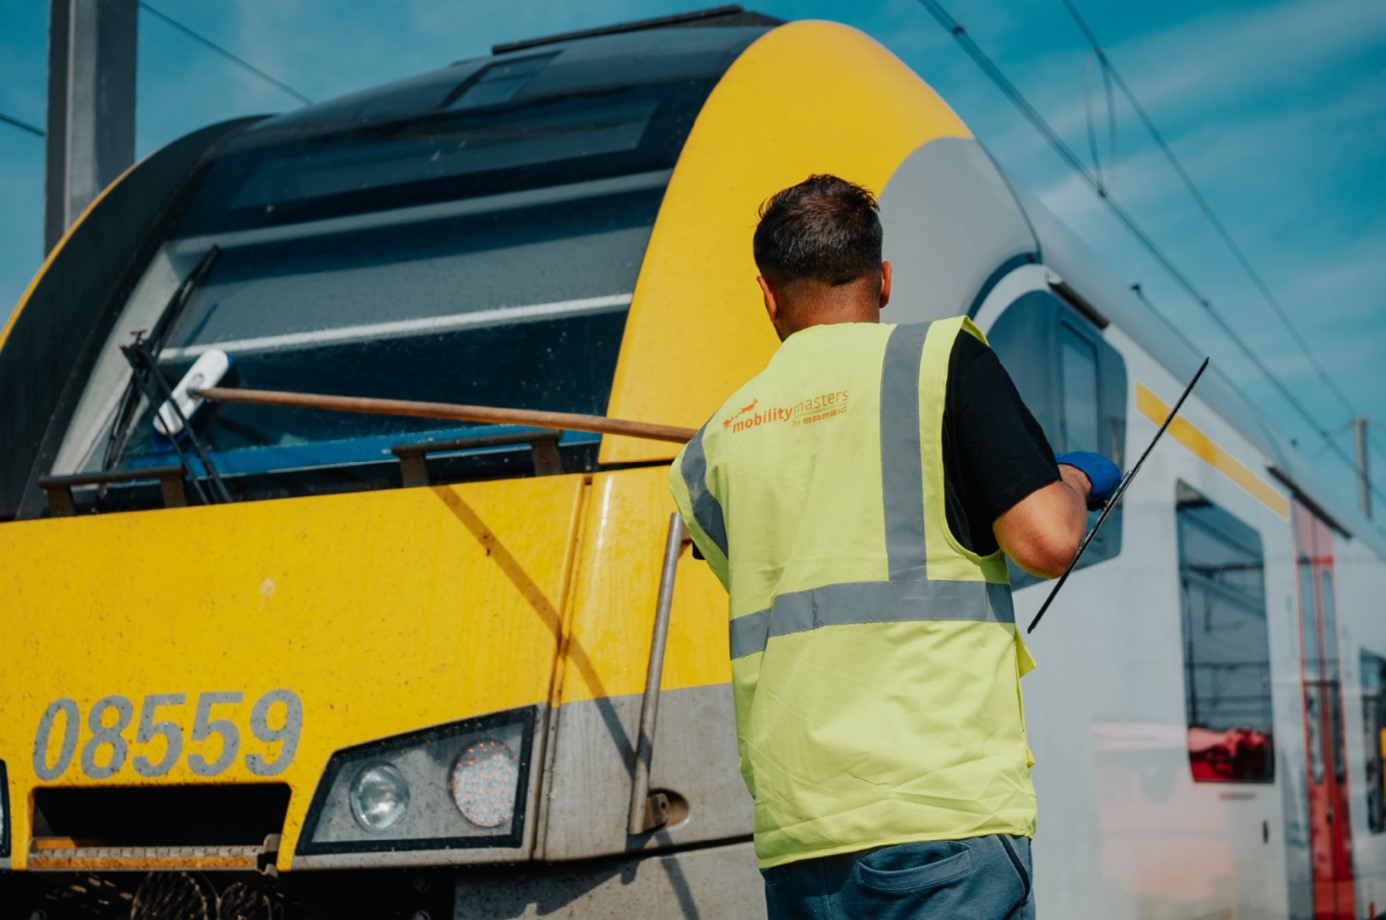 Vacature inspecteur schoonmaak treinen in Schaarbeek of Vorst (Brussel) - Mobility Masters